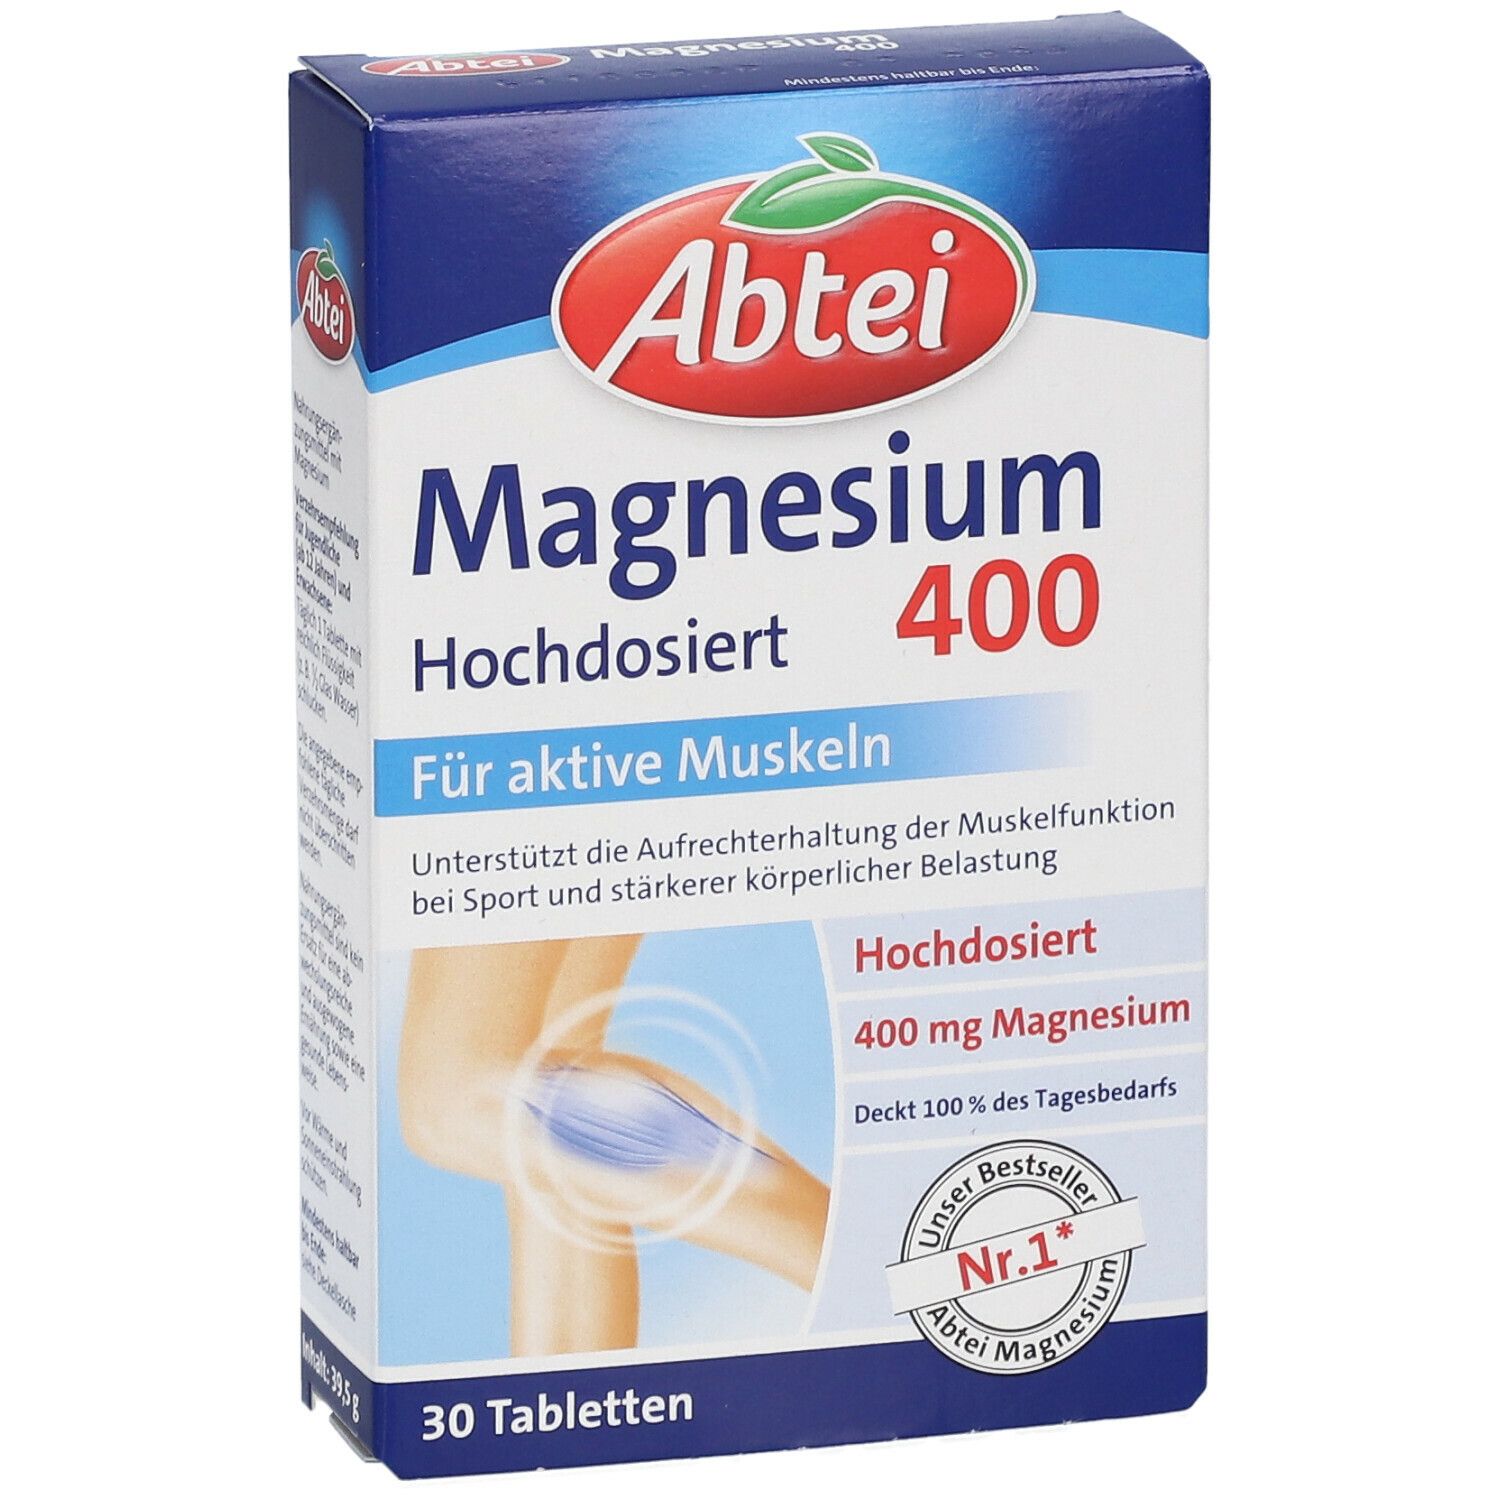 Abtei® Magnesium 400 hochdosiert